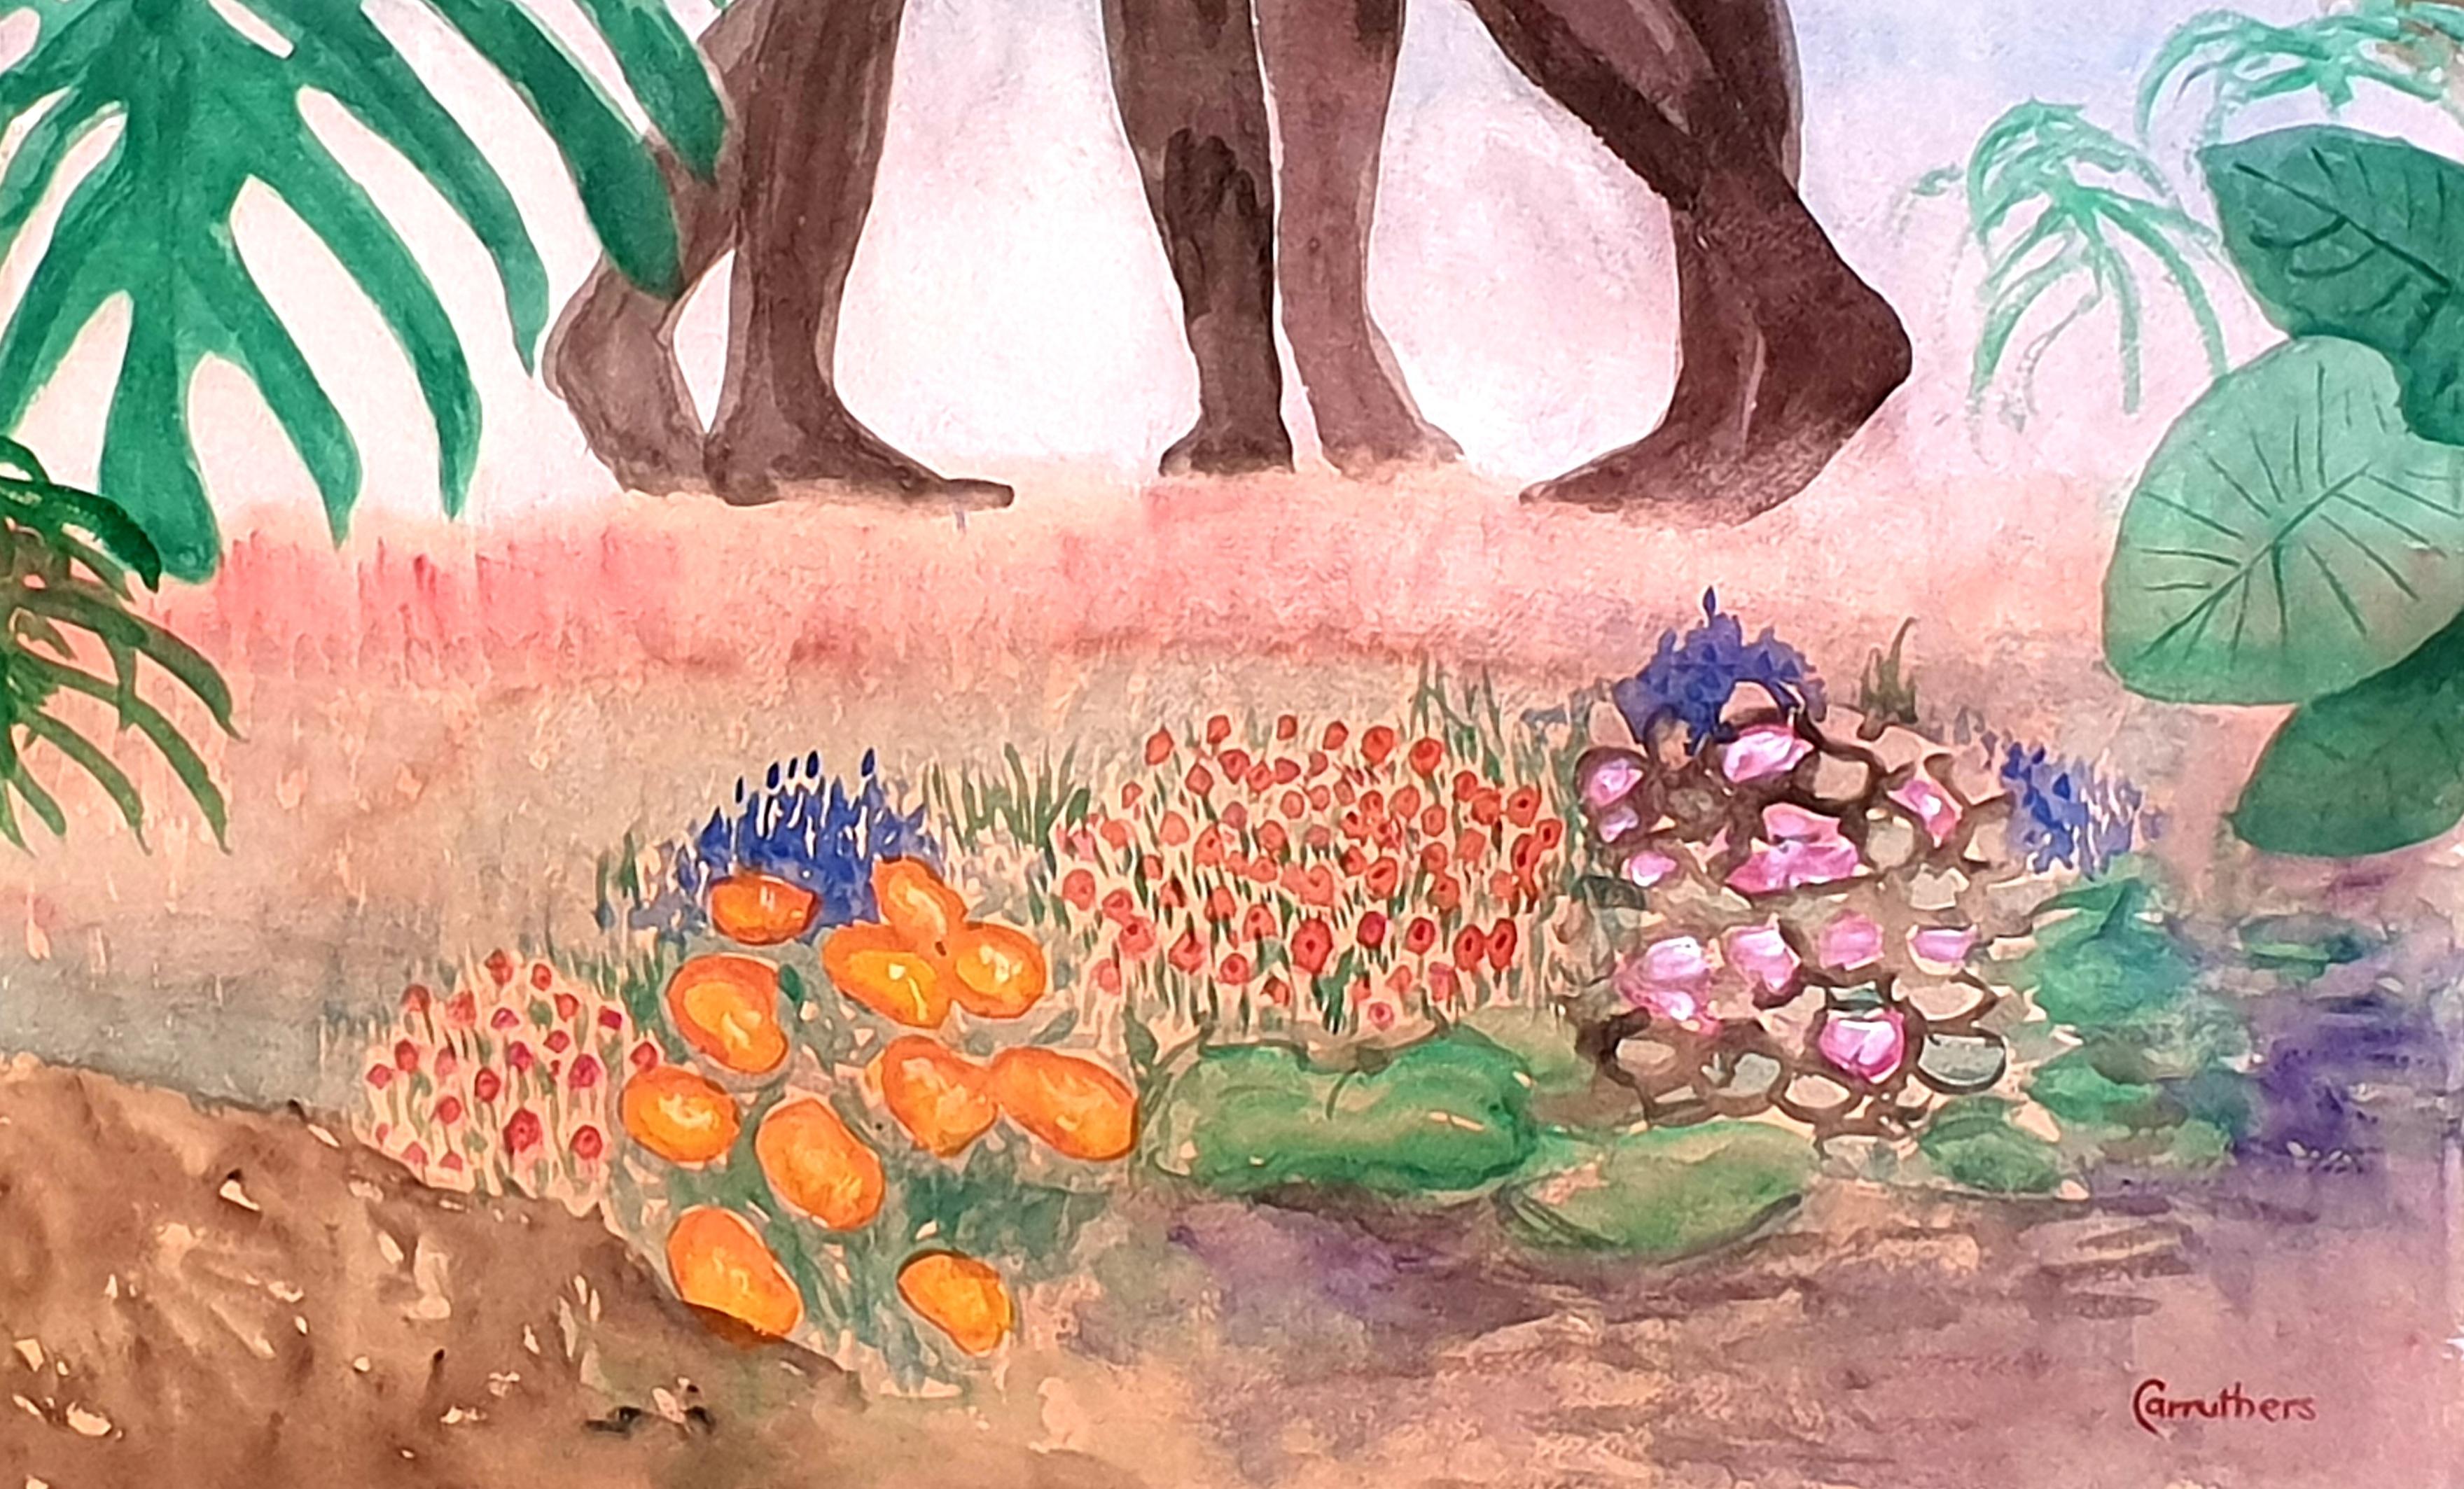 Gouache et aquarelle surréalistes sur papier de la fin du XXe siècle représentant Les Trois Grâces par l'artiste britannique Derek Carruthers. Le tableau est signé en bas à droite.

Une peinture imposante et très colorée de trois figures féminines